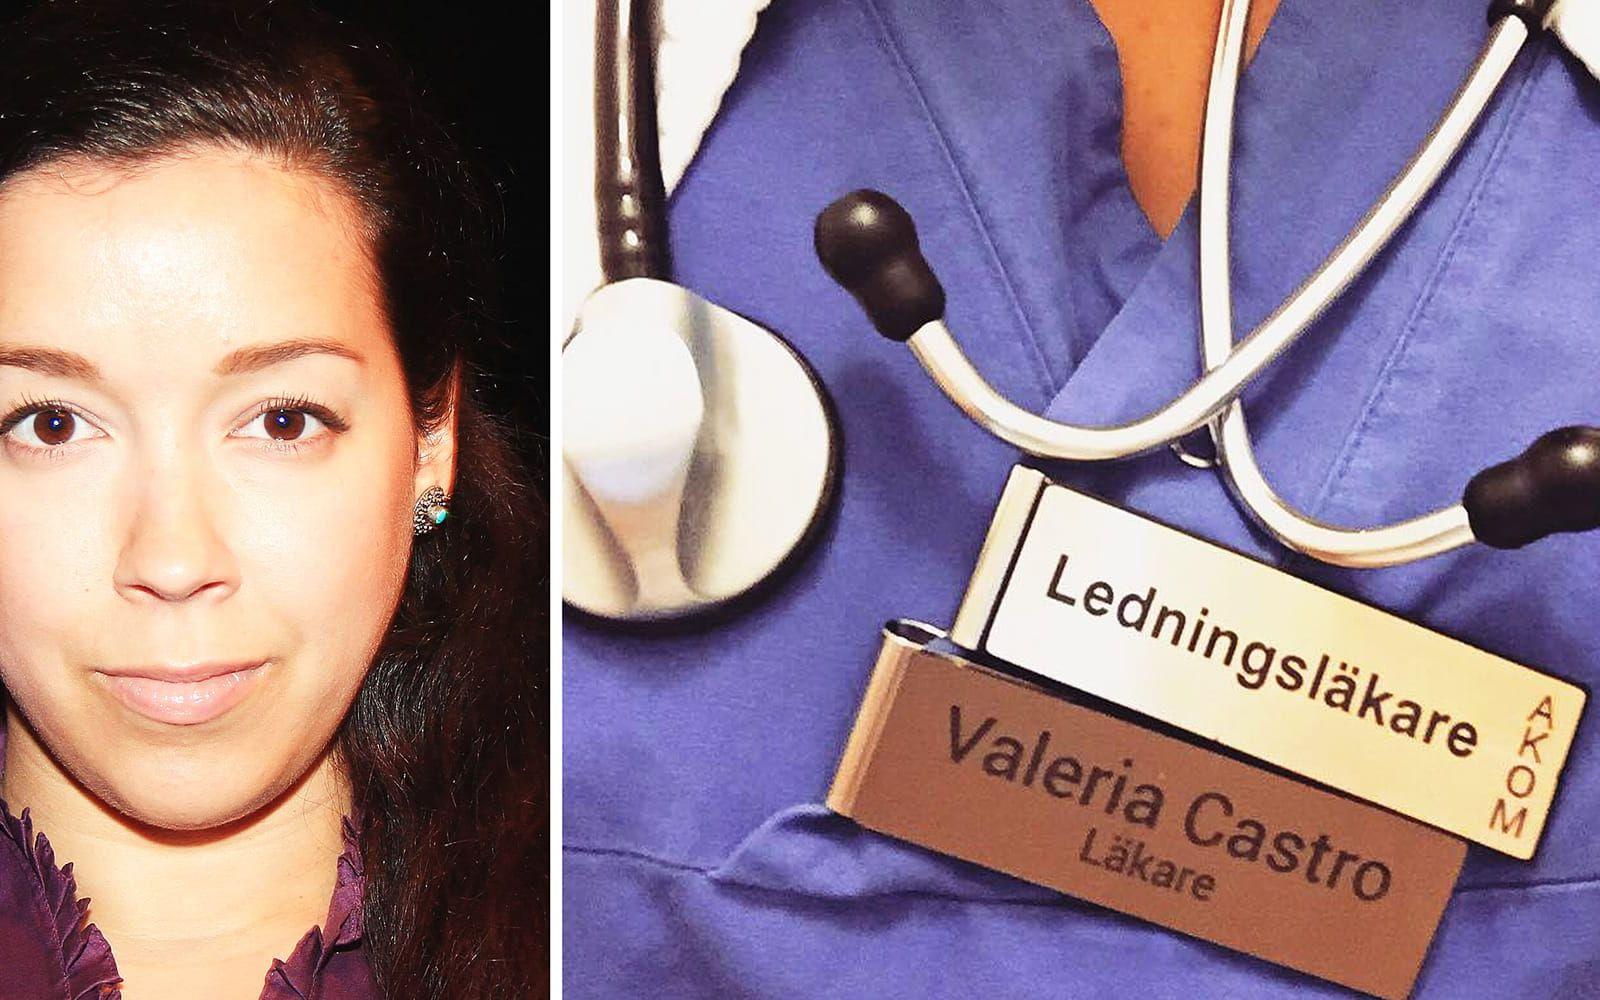 Läkaren Valeria Castro har skrivit om sin frustration på Facebook. FOTO: Privat